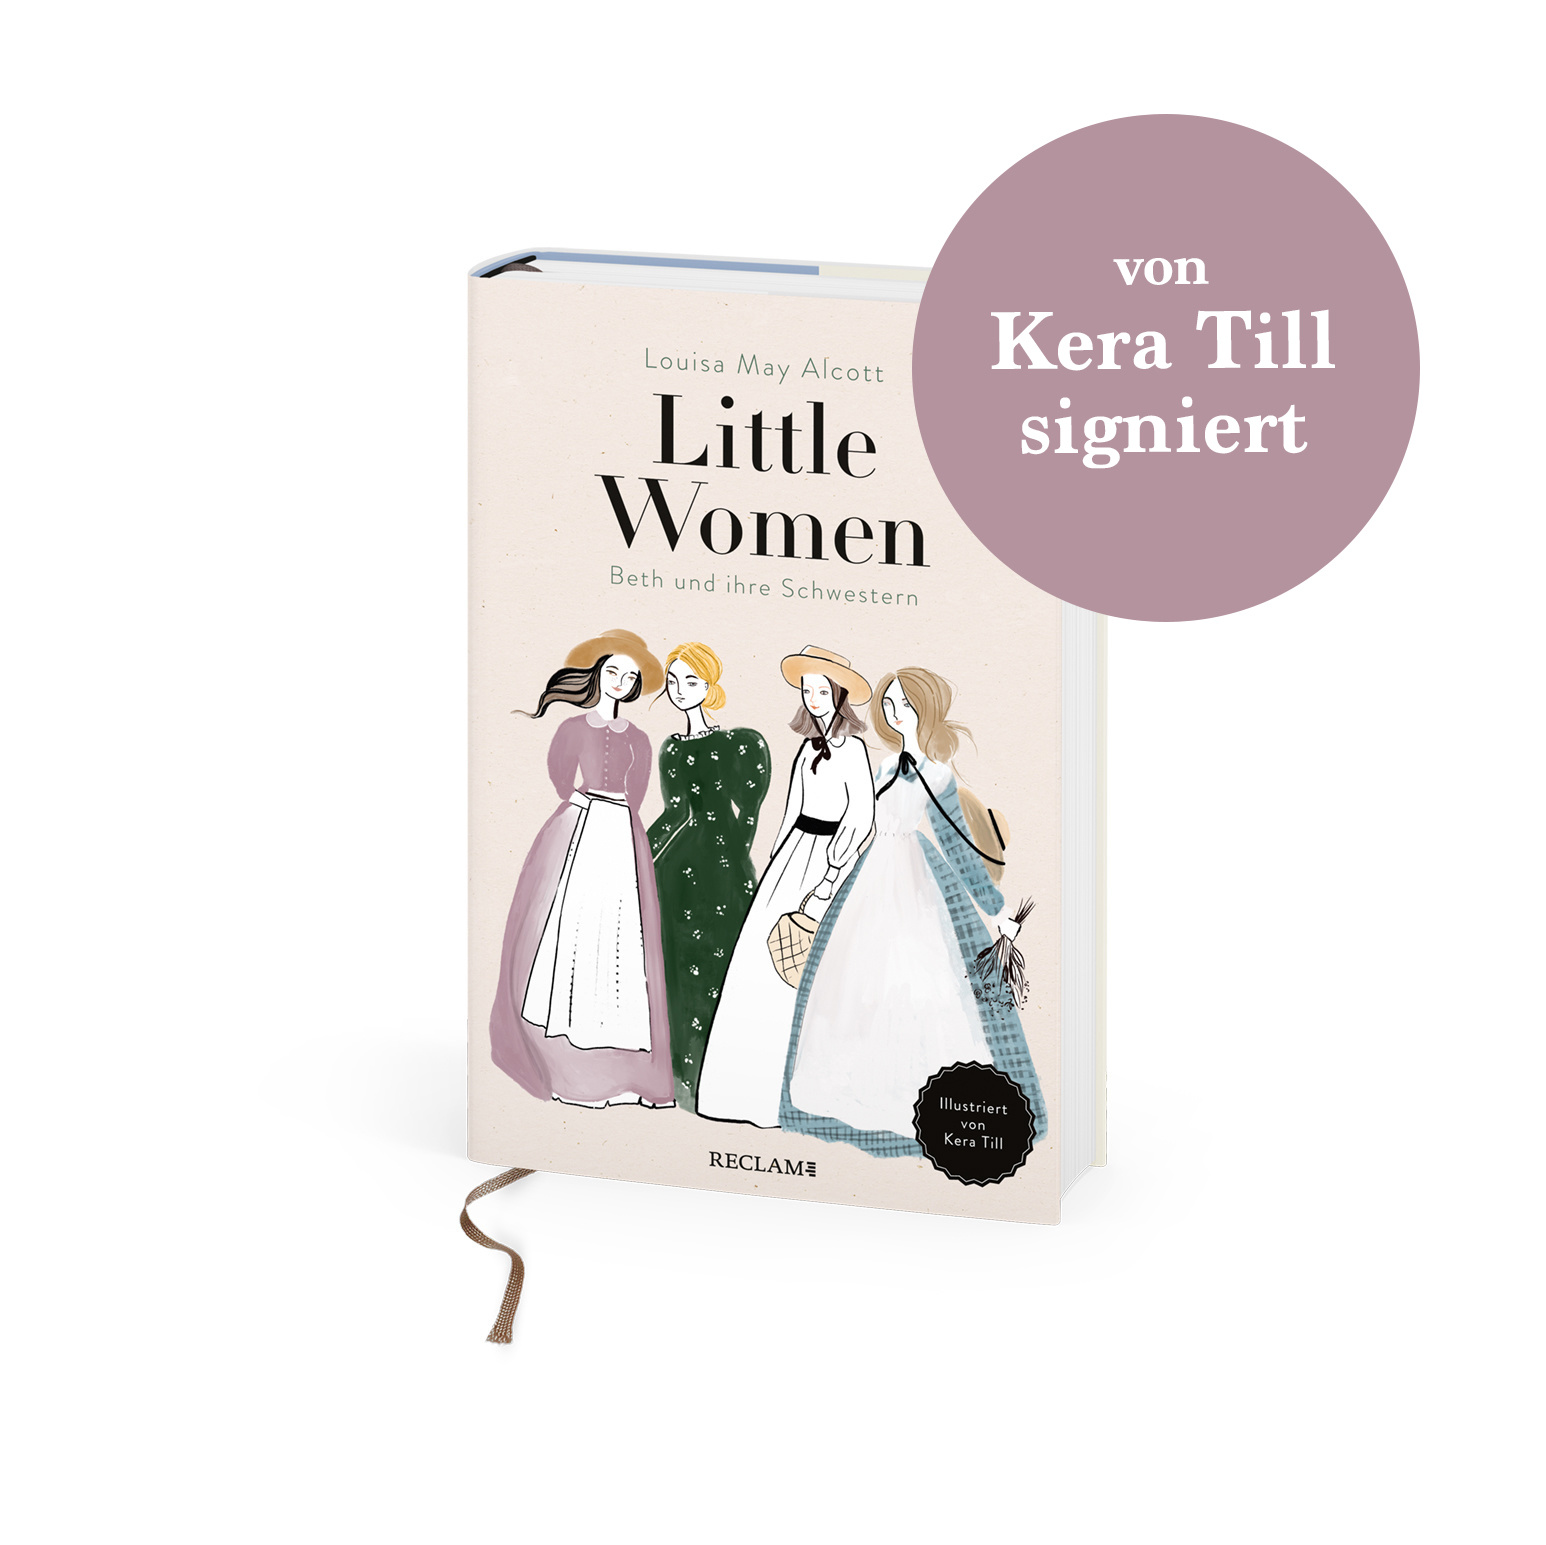 Little Women (mit Kera Till-Signatur)